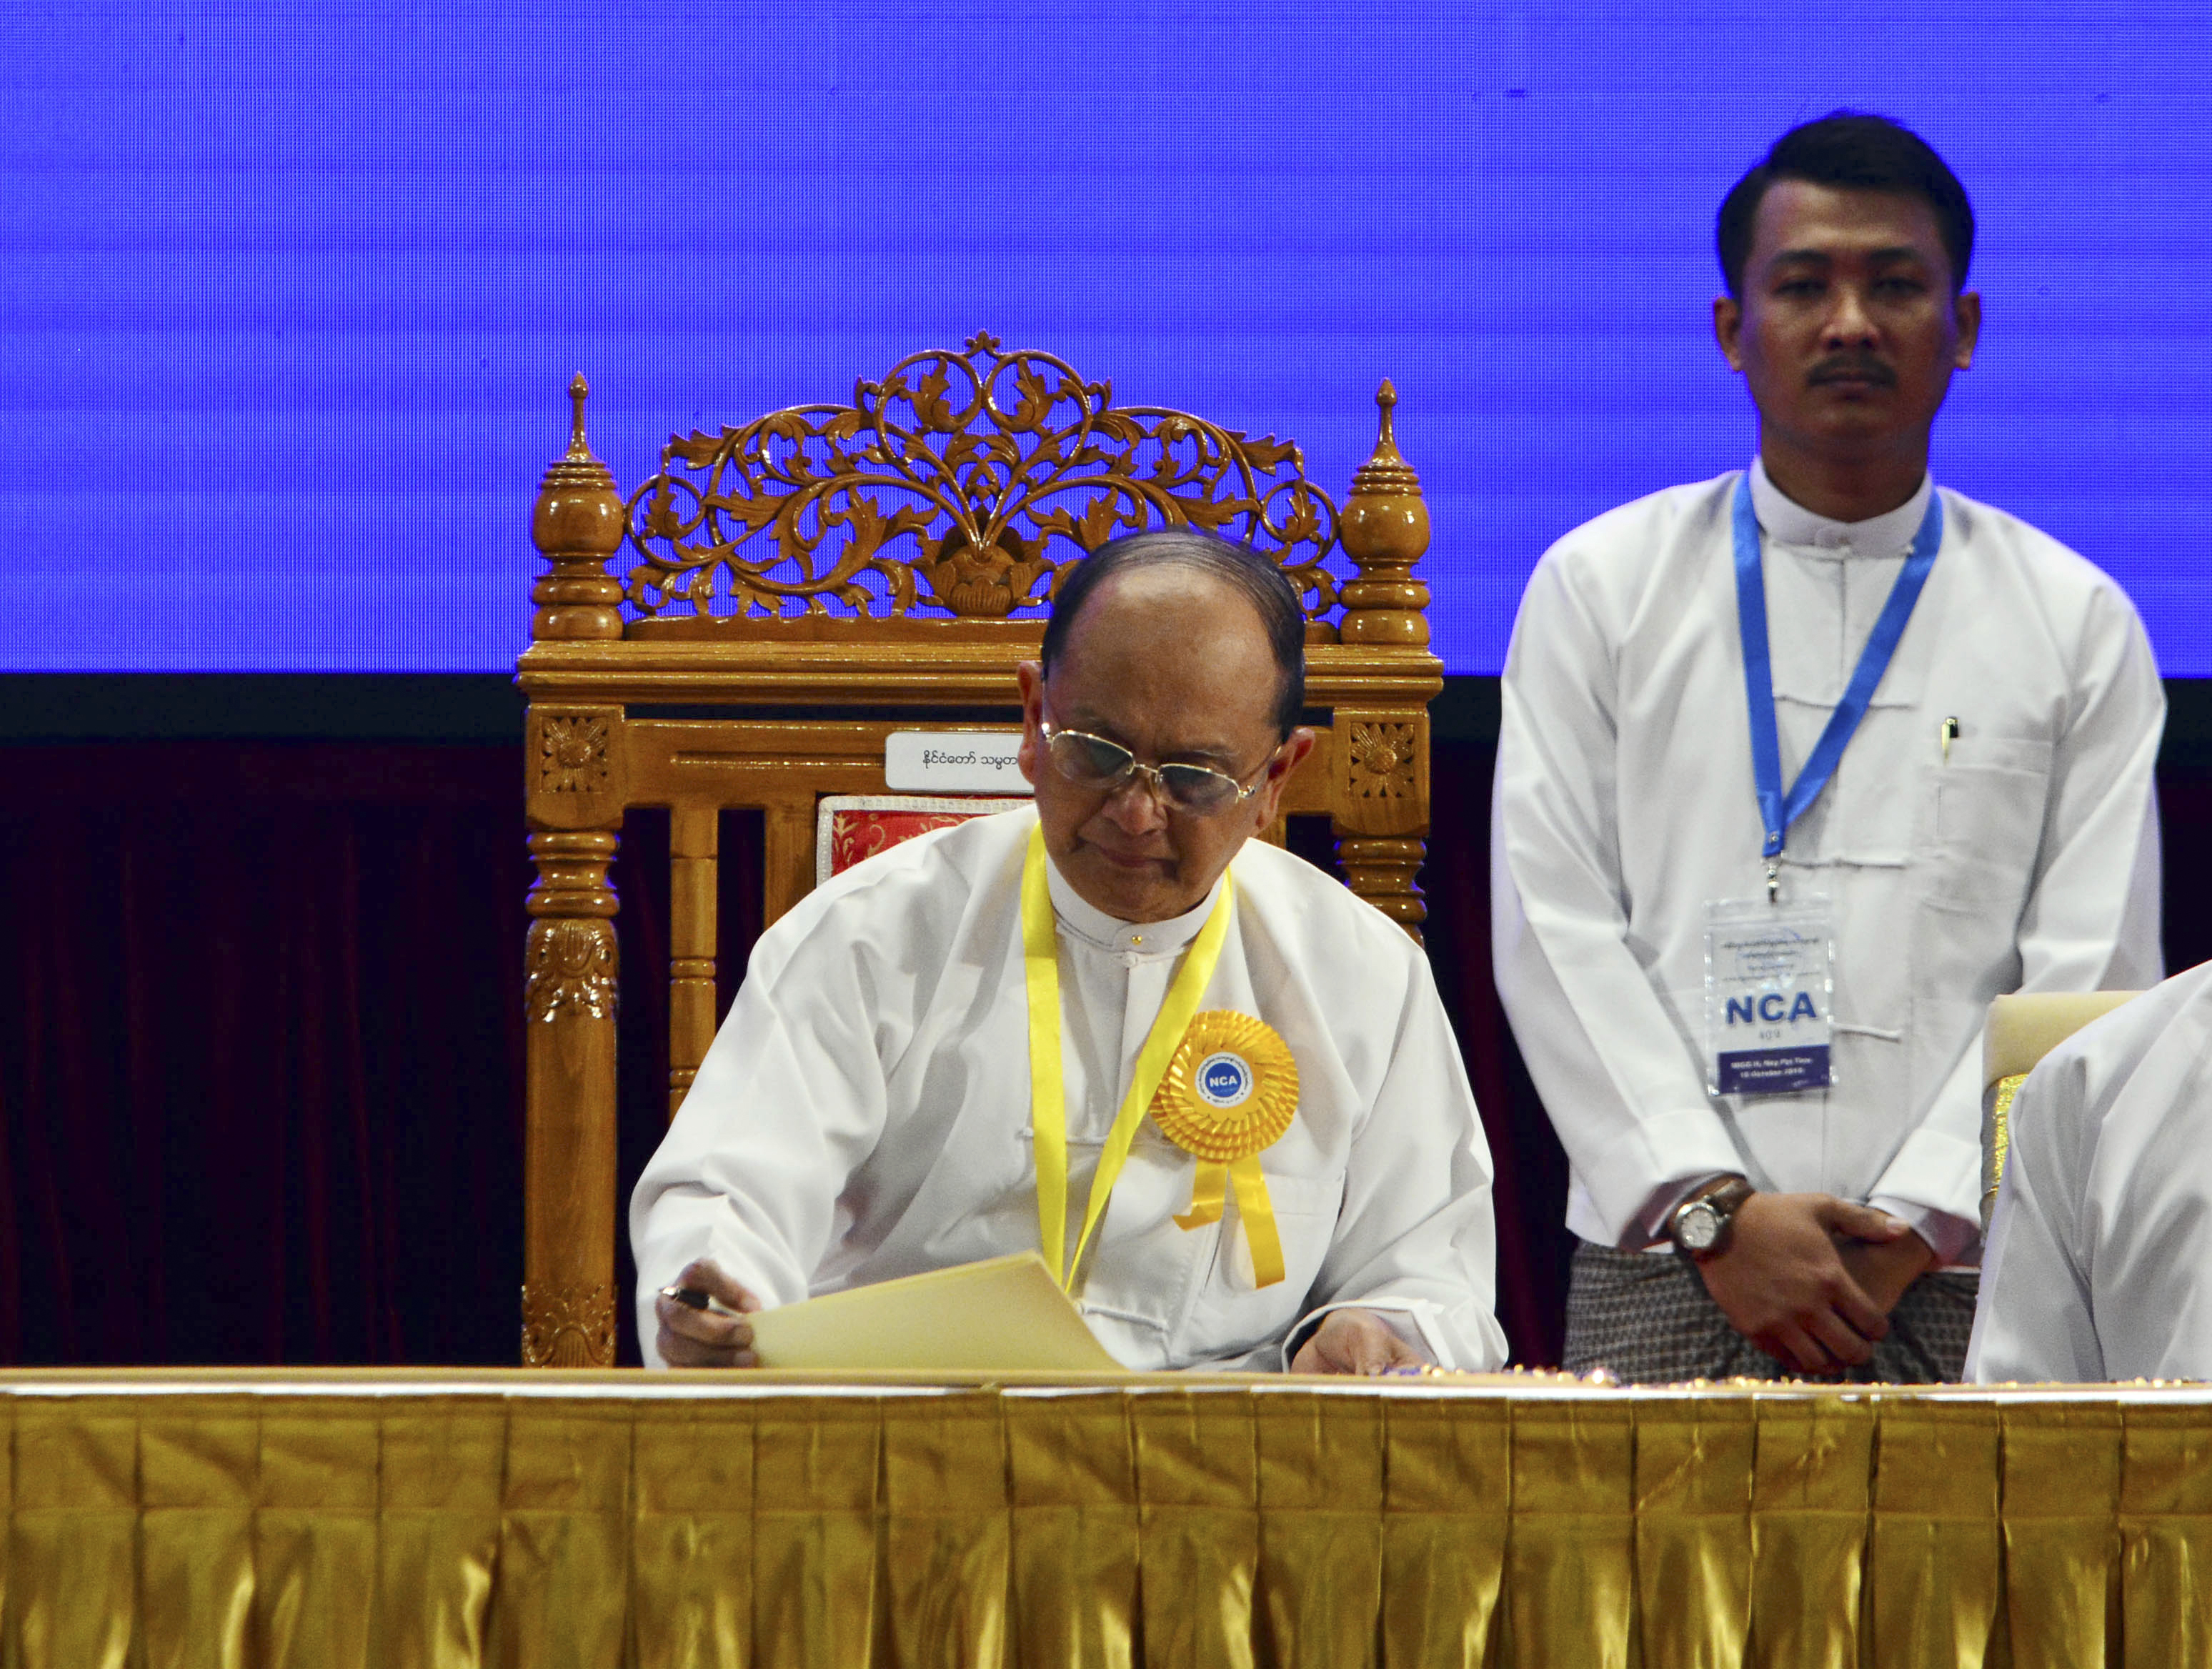 I Burma får man inte skriva vad man vill på internet. Särskilt inte om regeringen.